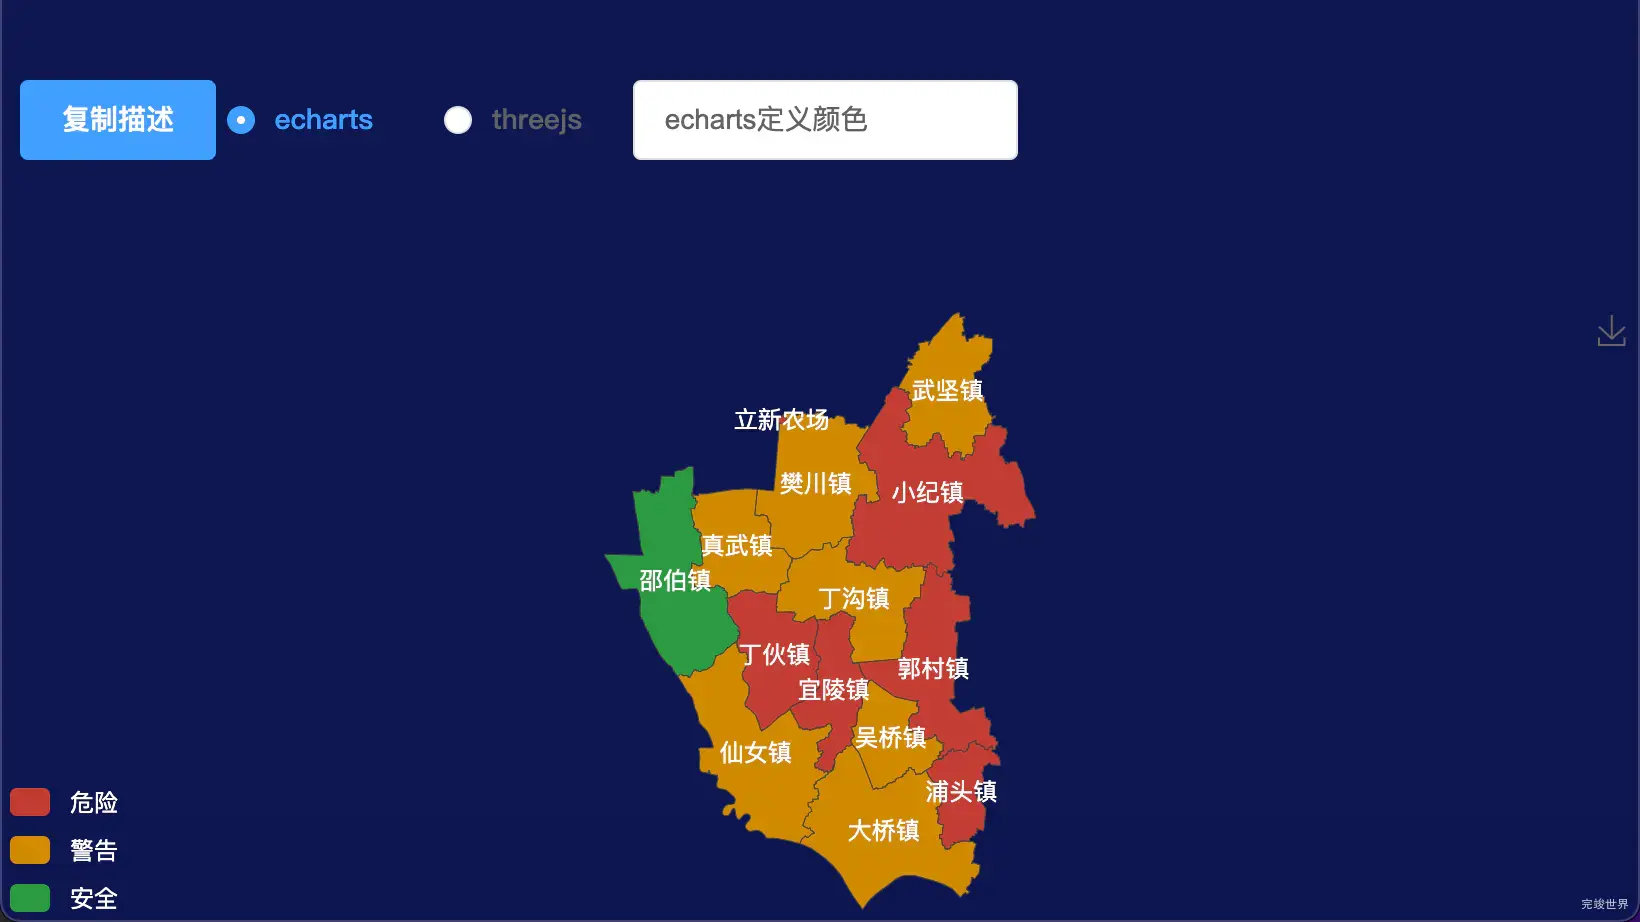 echarts扬州市江都区geoJson地图地图下钻展示